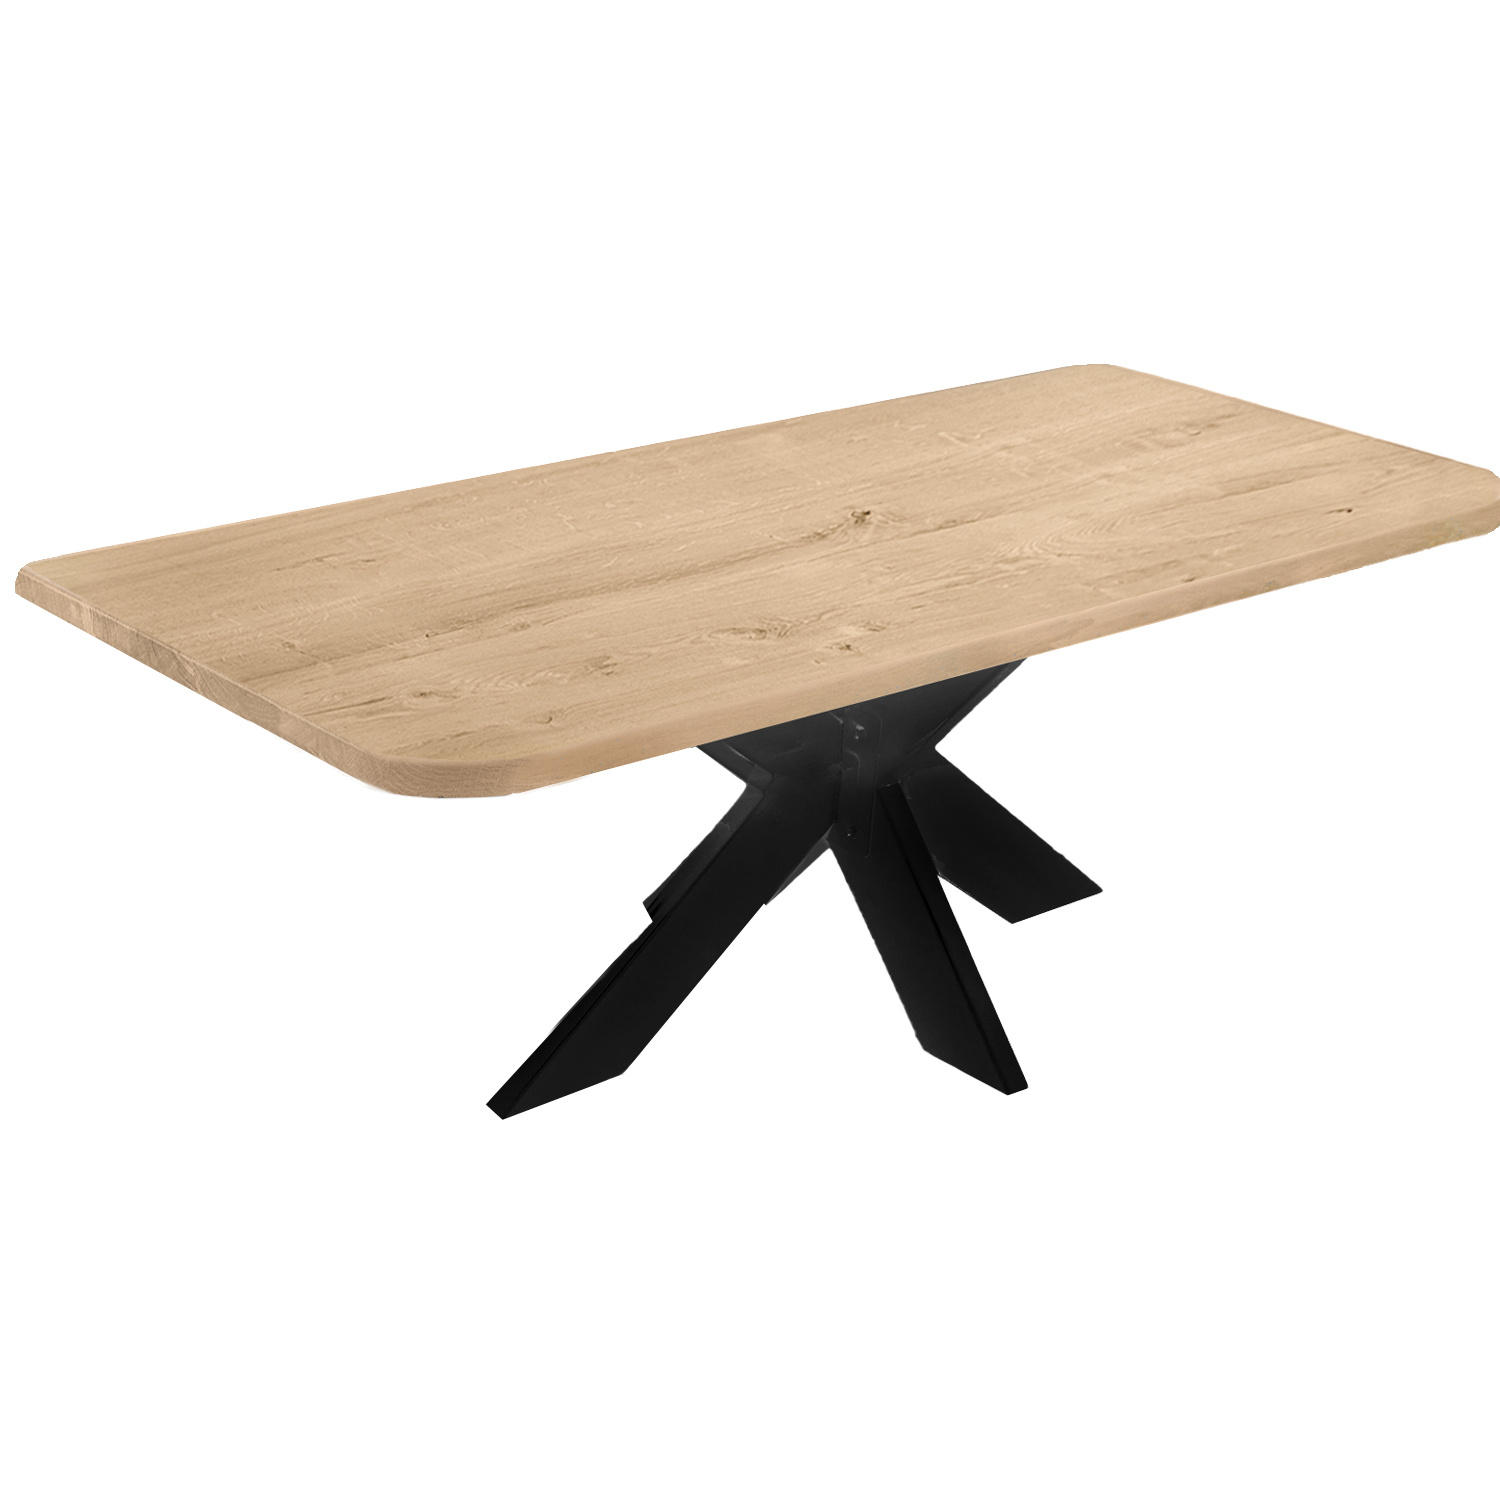  Tischplatte Eiche - mit runden Ecken - nach Maß - 4 cm dick (1-Schicht) - Breite Lamellen (10 - 12 cm breit) - Eichenholz rustikal - verleimt & künstlich getrocknet (HF 8-12%) - mit abgerundeten Kanten - 50-120x50-248 cm